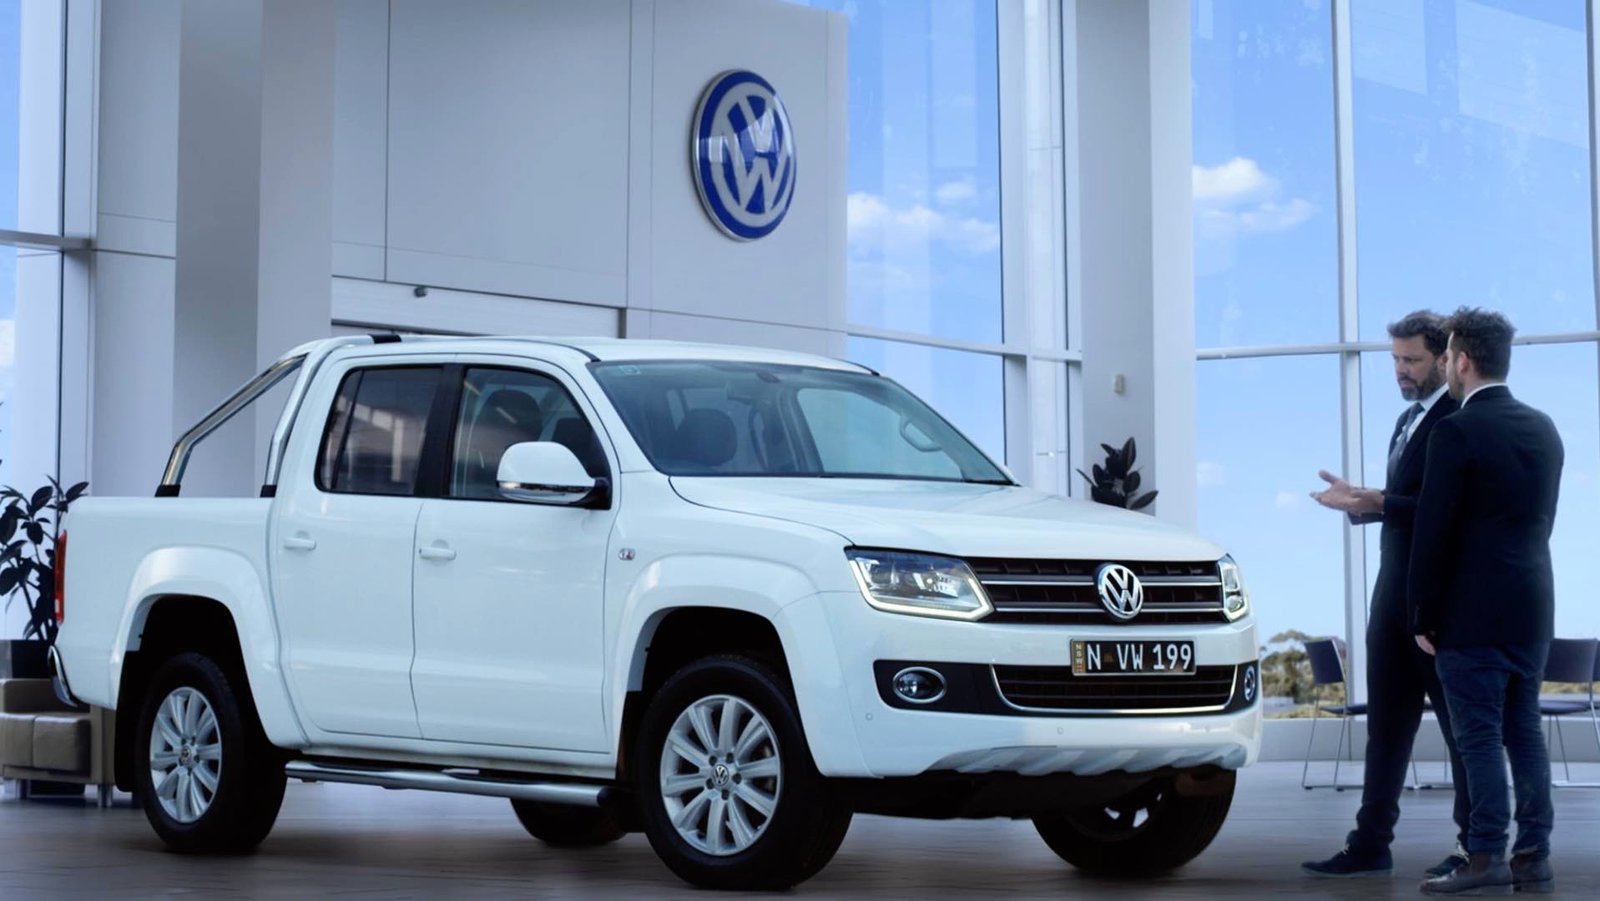 Volkswagen – The Next Stop